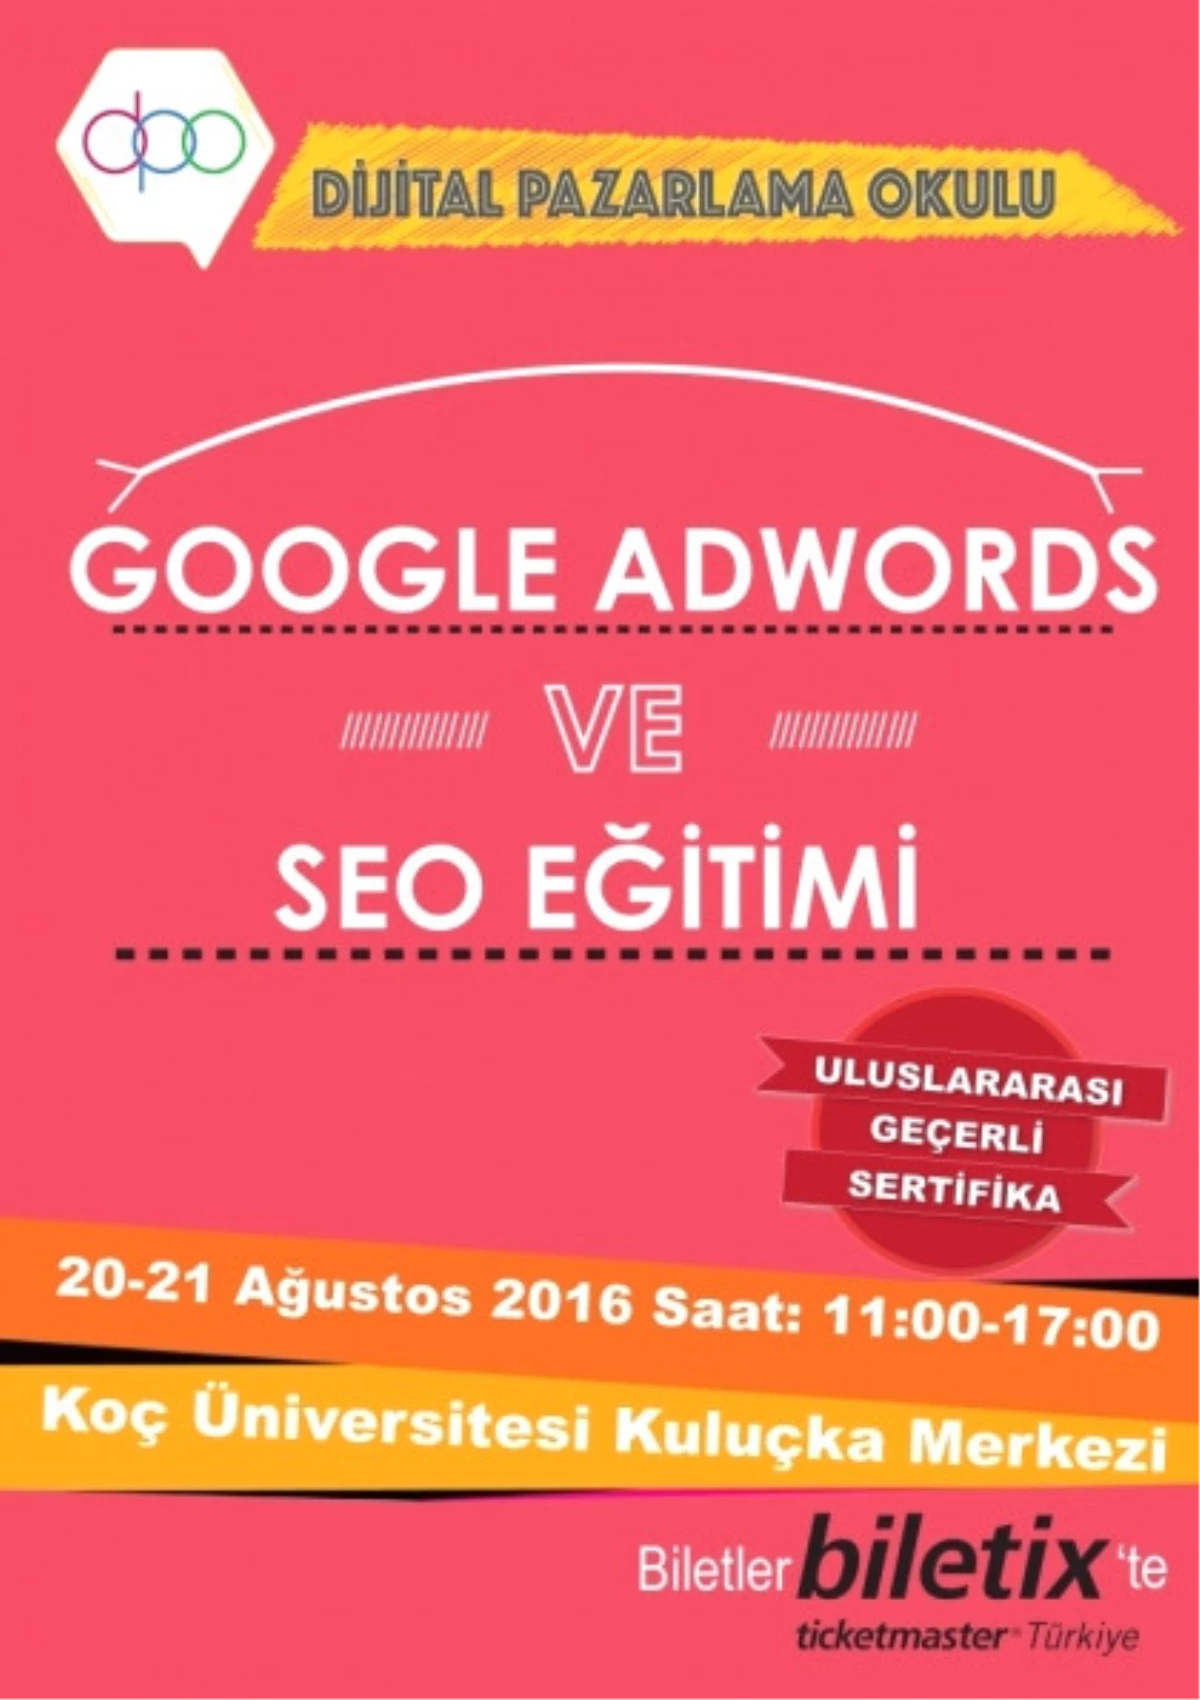 Google Adwords ve Seo Eğitimi